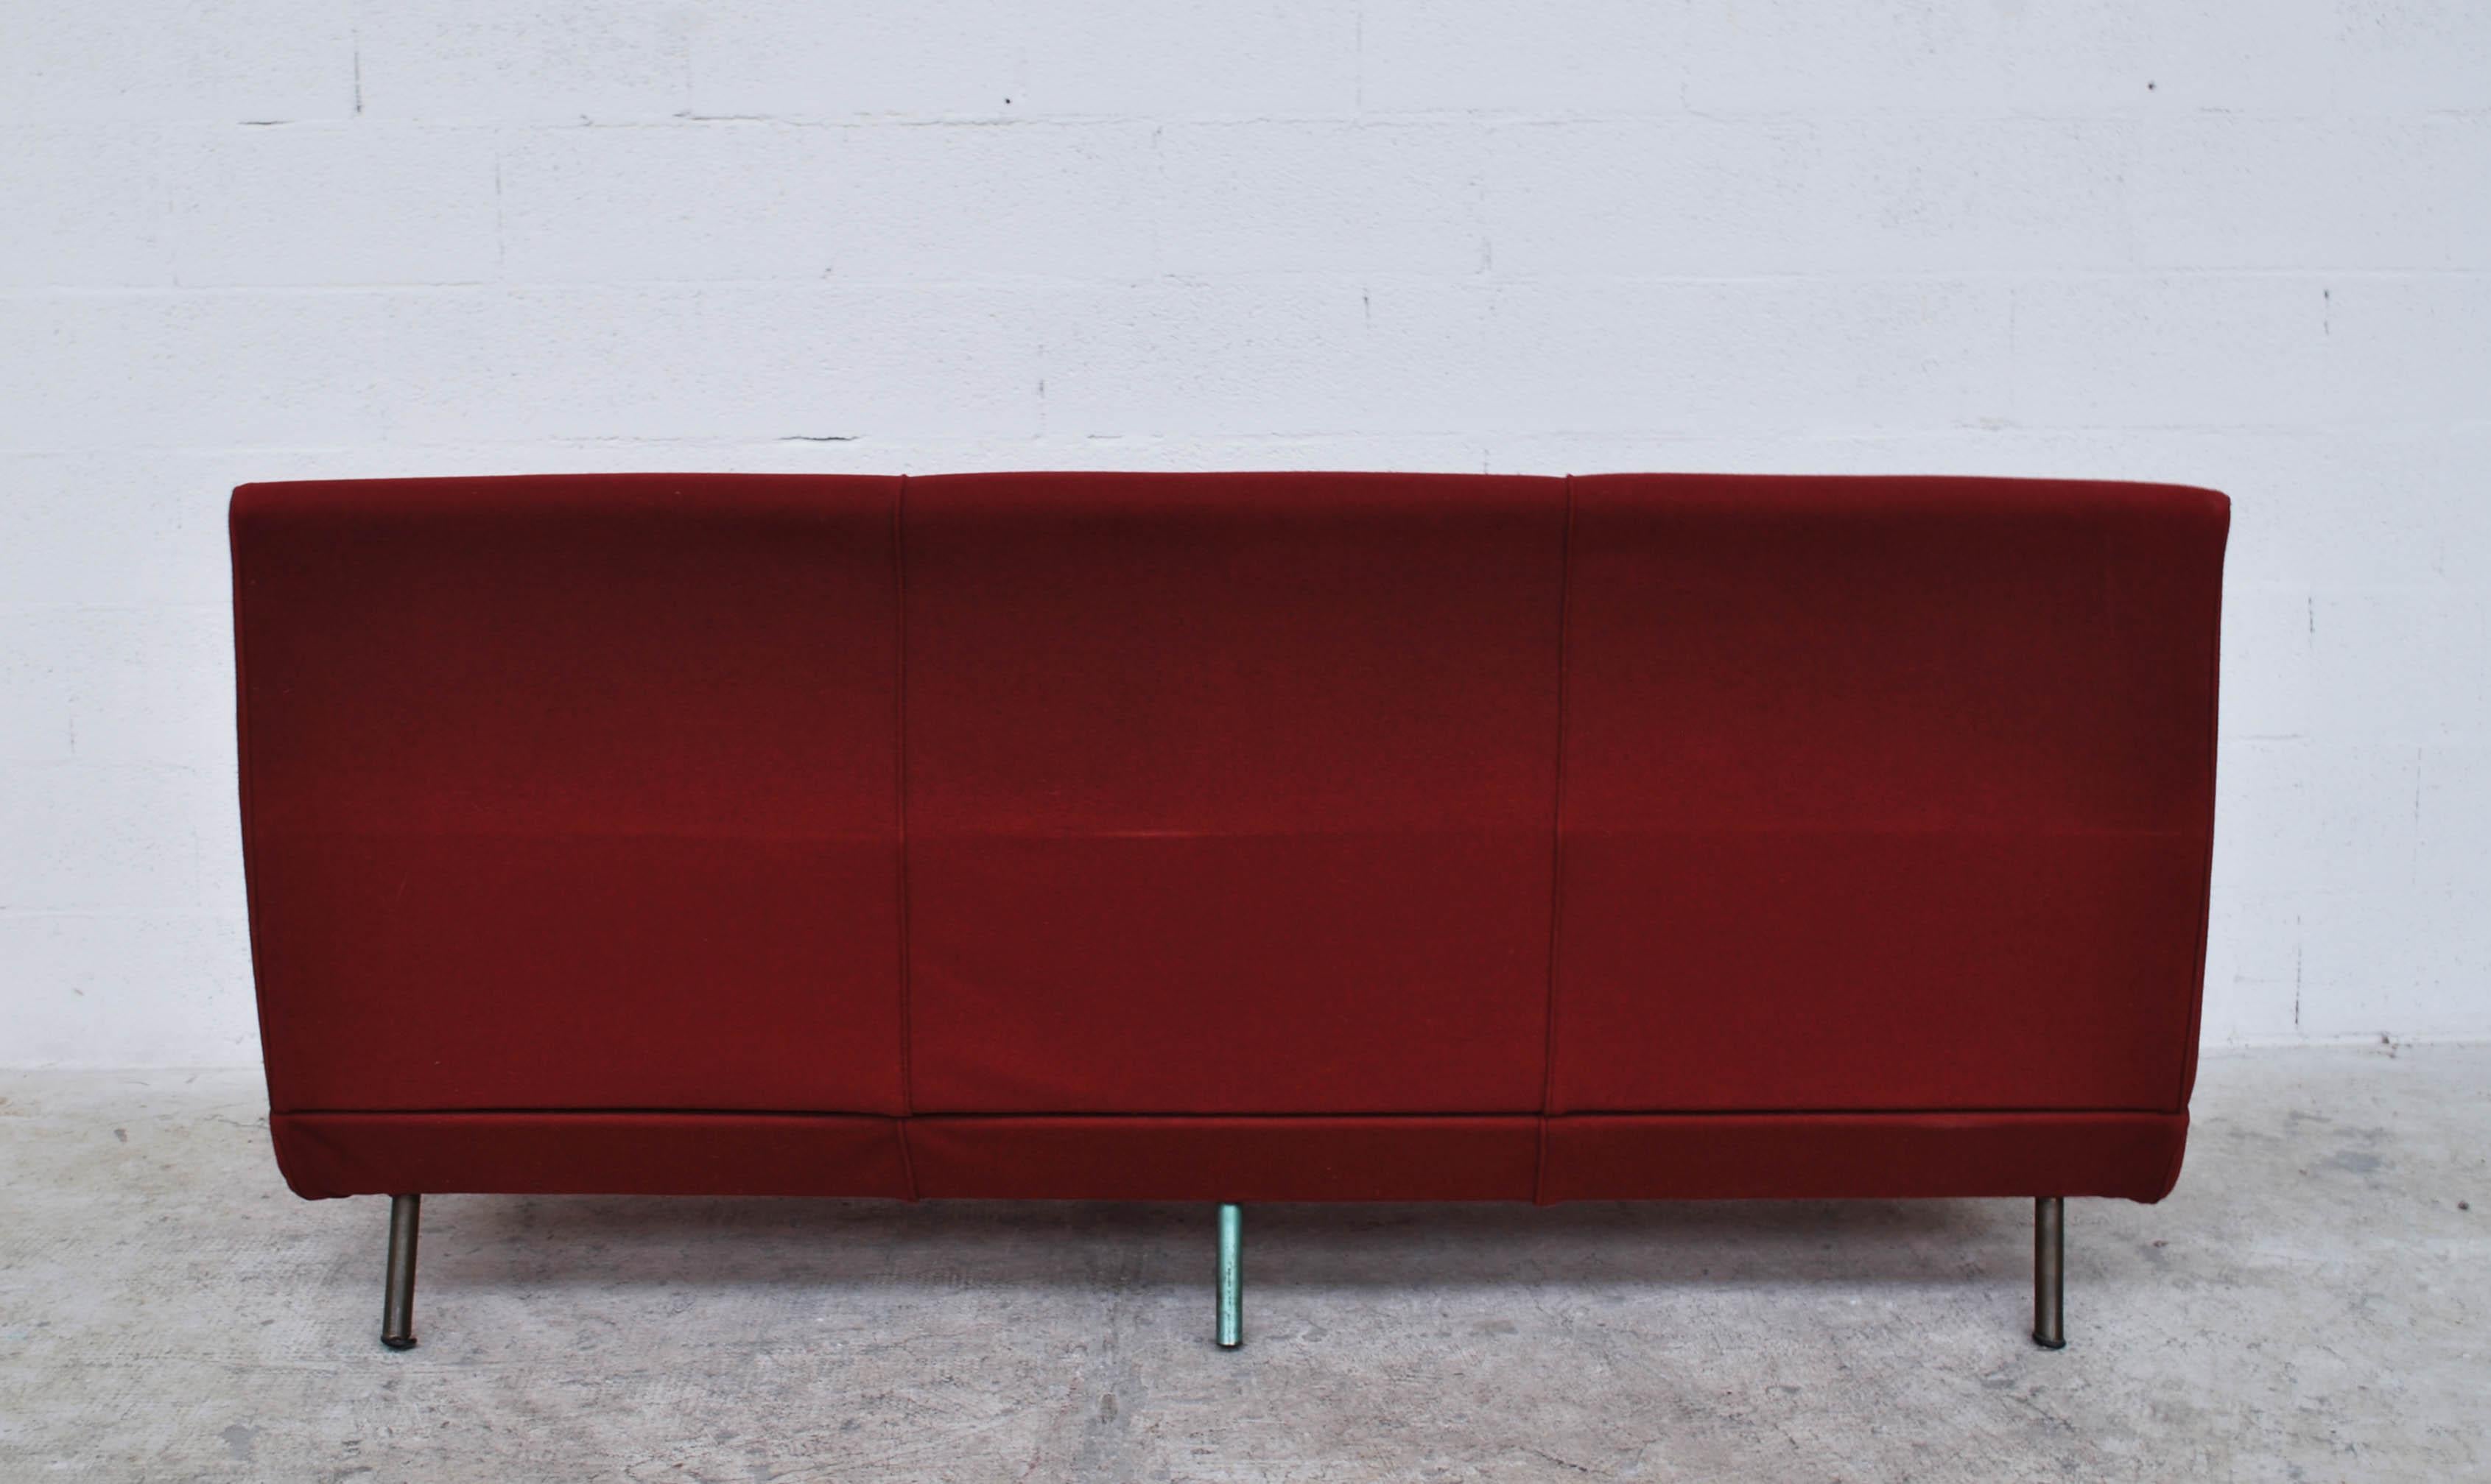 Italian Divano Triennale 3 Seater Sofa Design by Marco Zanuso for Arflex 50s, 60s For Sale